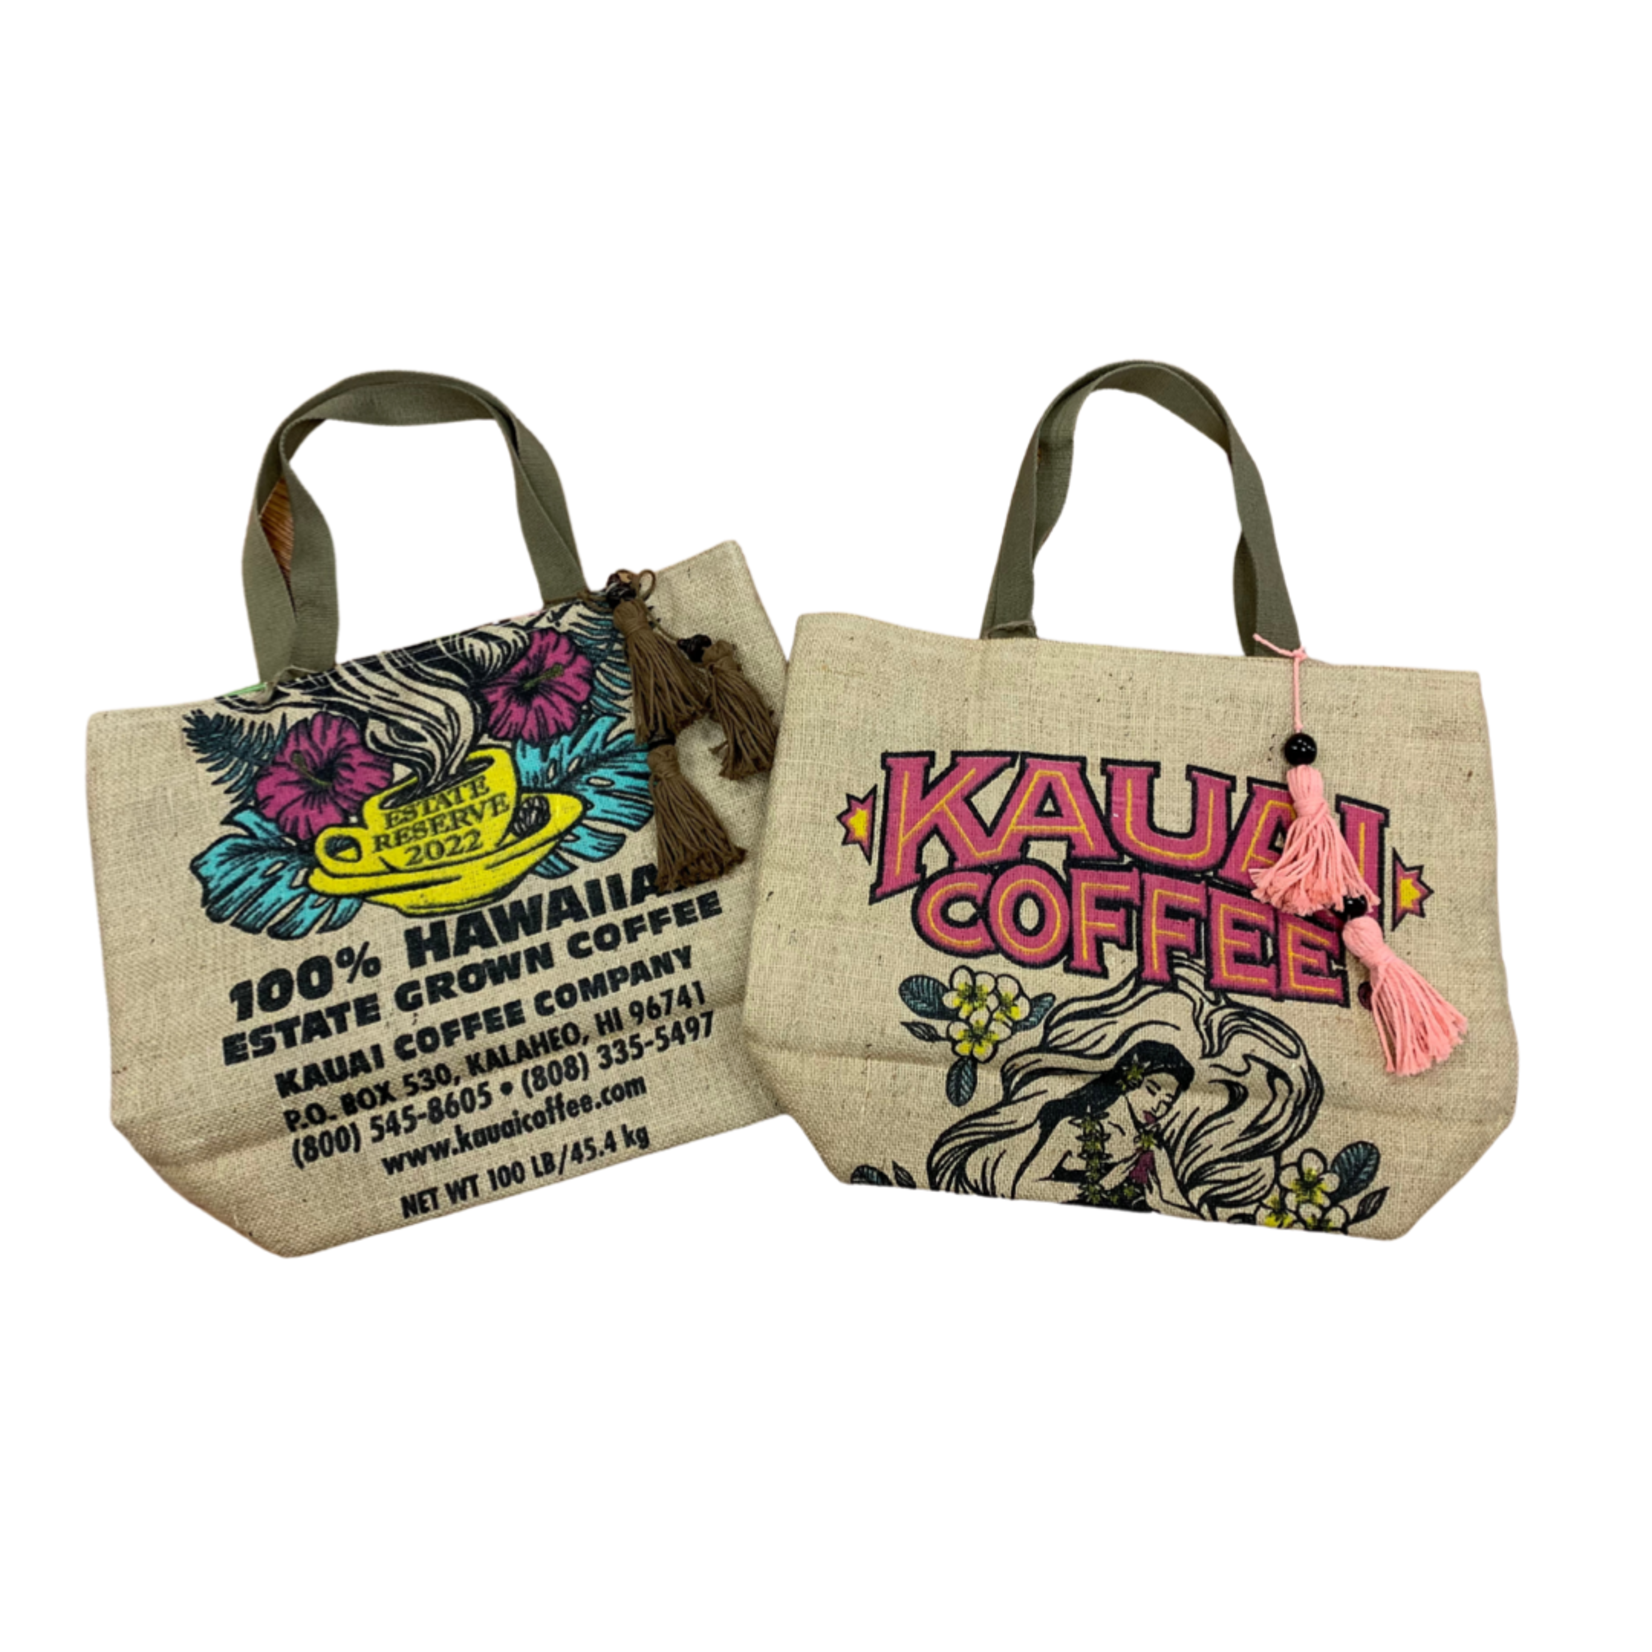 Kilohana Clothing Co. Kaua’i Coffee Tote Bag w/ Canvas Handle